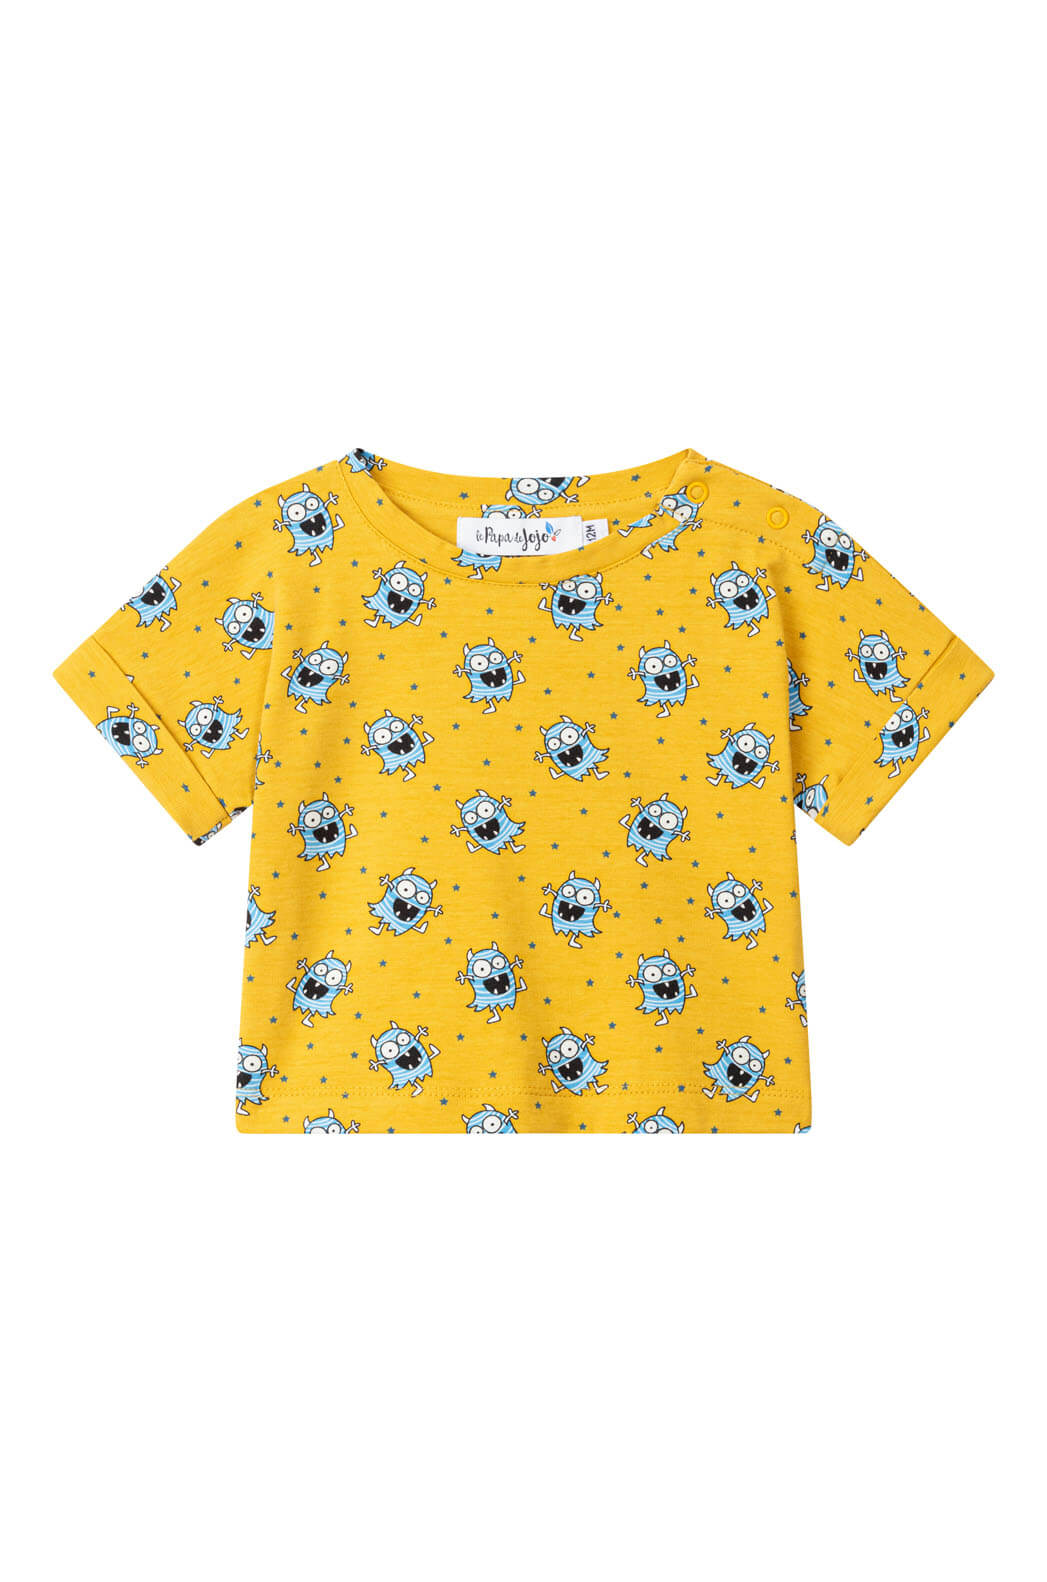 Tshirt jaune pour bébé et enfant, avec de petits monstres sympa couleur bleus.